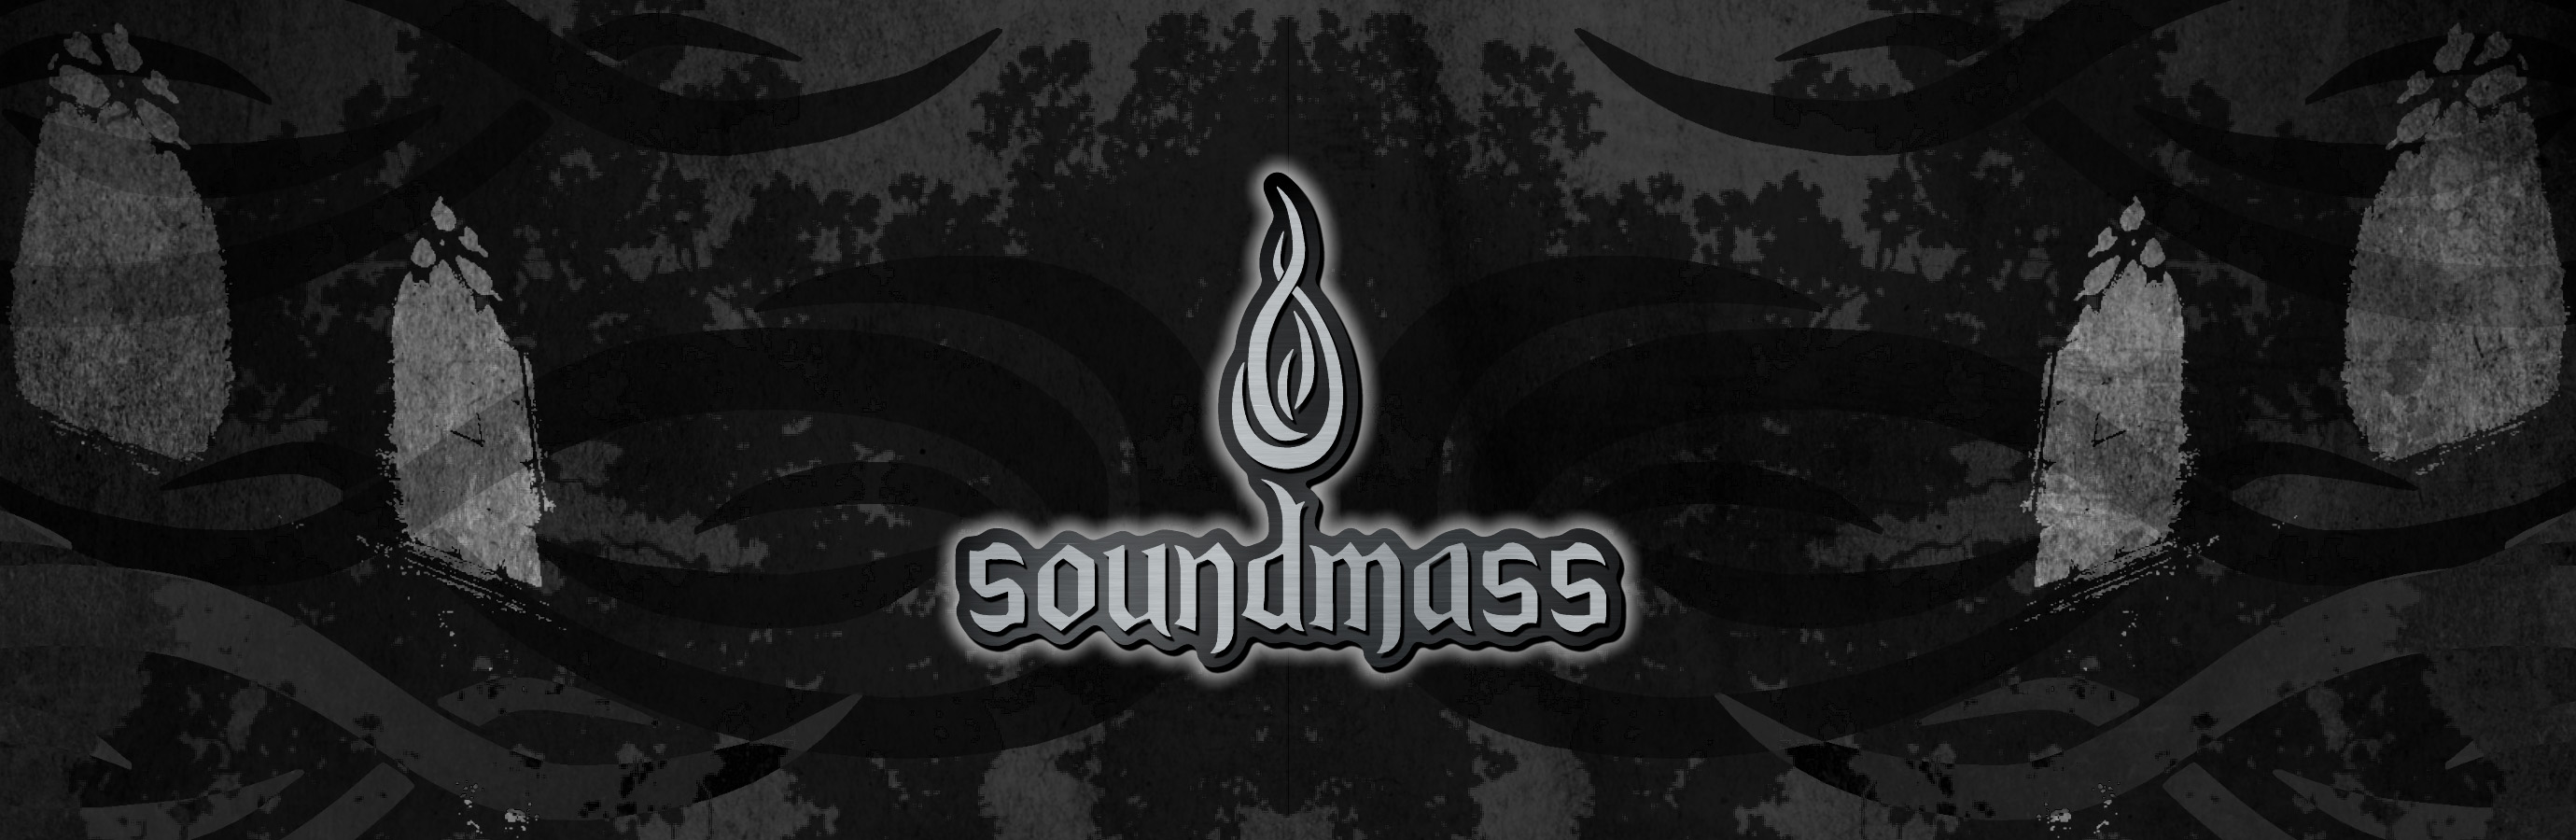 Soundmass Update: 23 February 2020 81373000008134006_zc_v18_header2